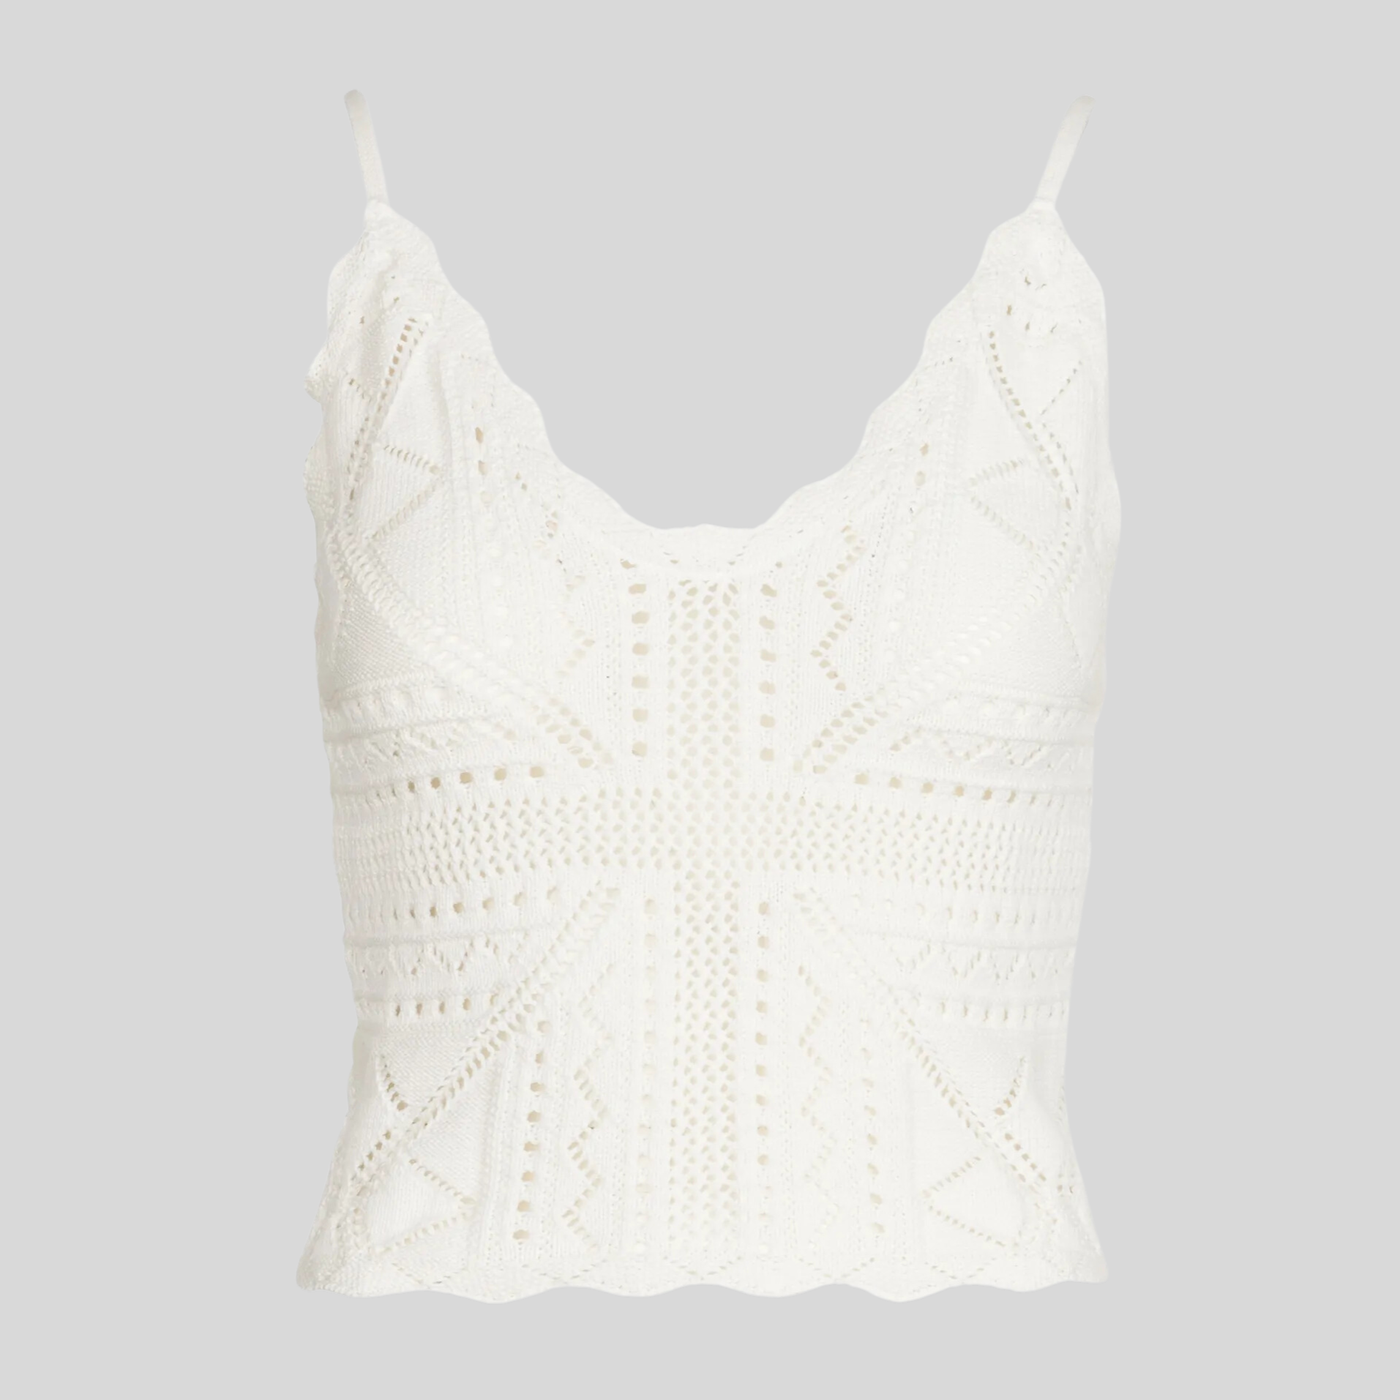 Gotstyle Fashion - Suncoo Camisoles Knit V-Neck Camisole - White